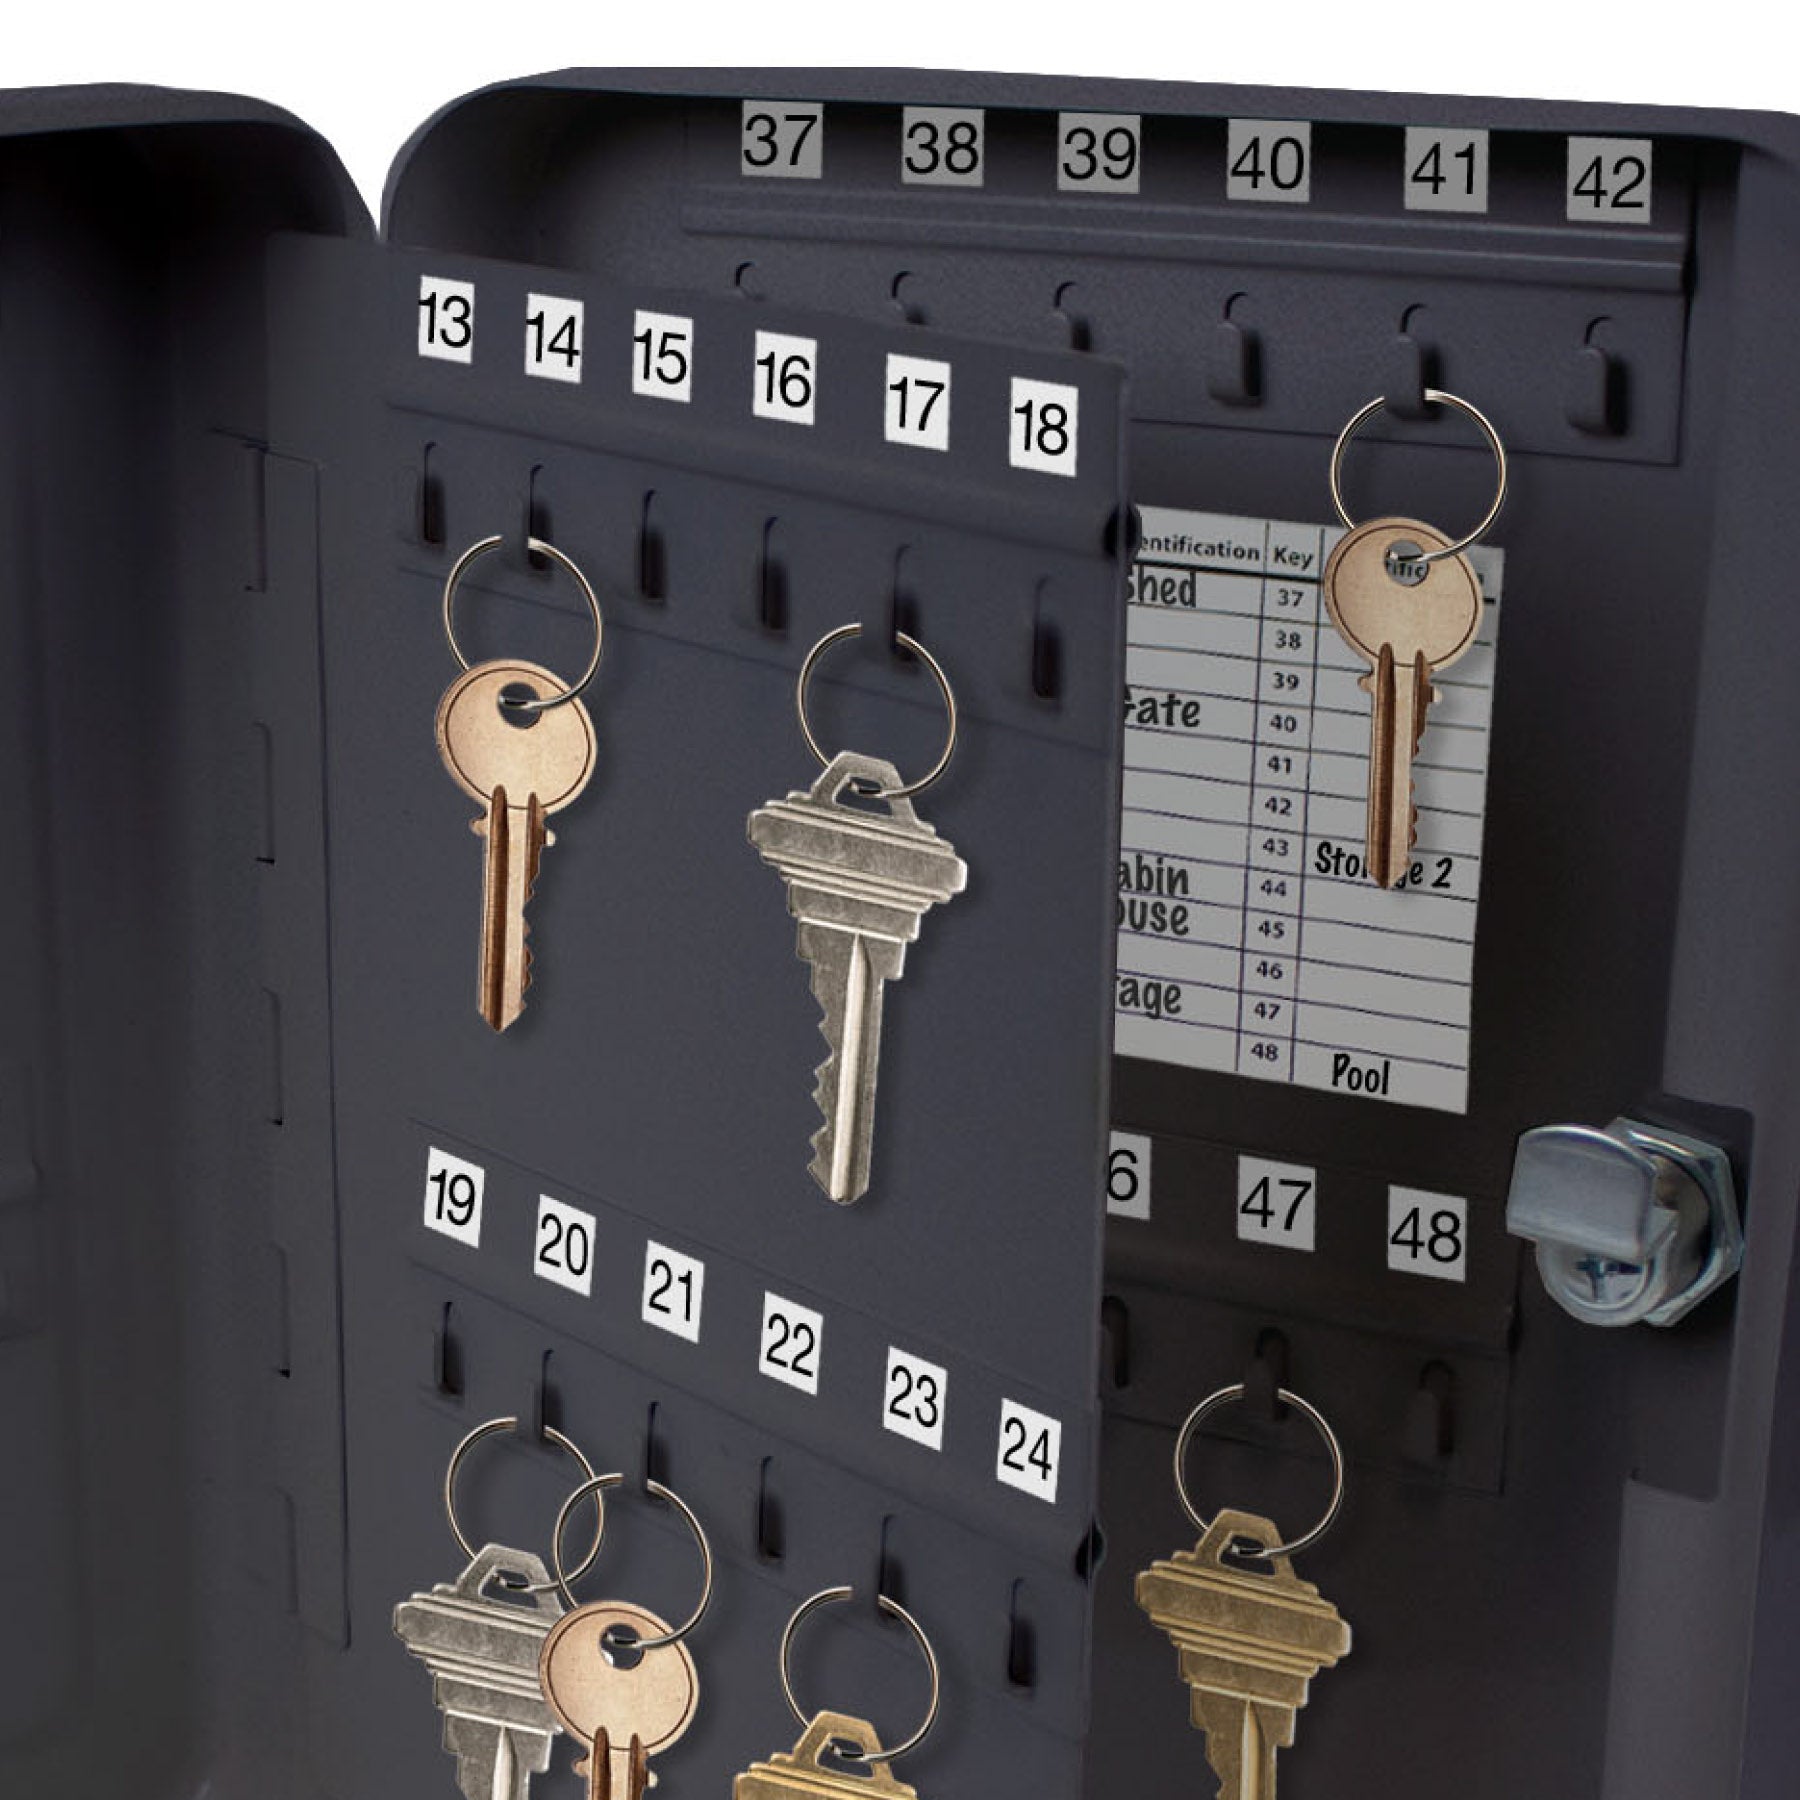 Lucky Line Tapas de llaves de tamaño industrial extra grandes,  identificador, buscador de llaves, paquete de 4 colores surtidos (16004)